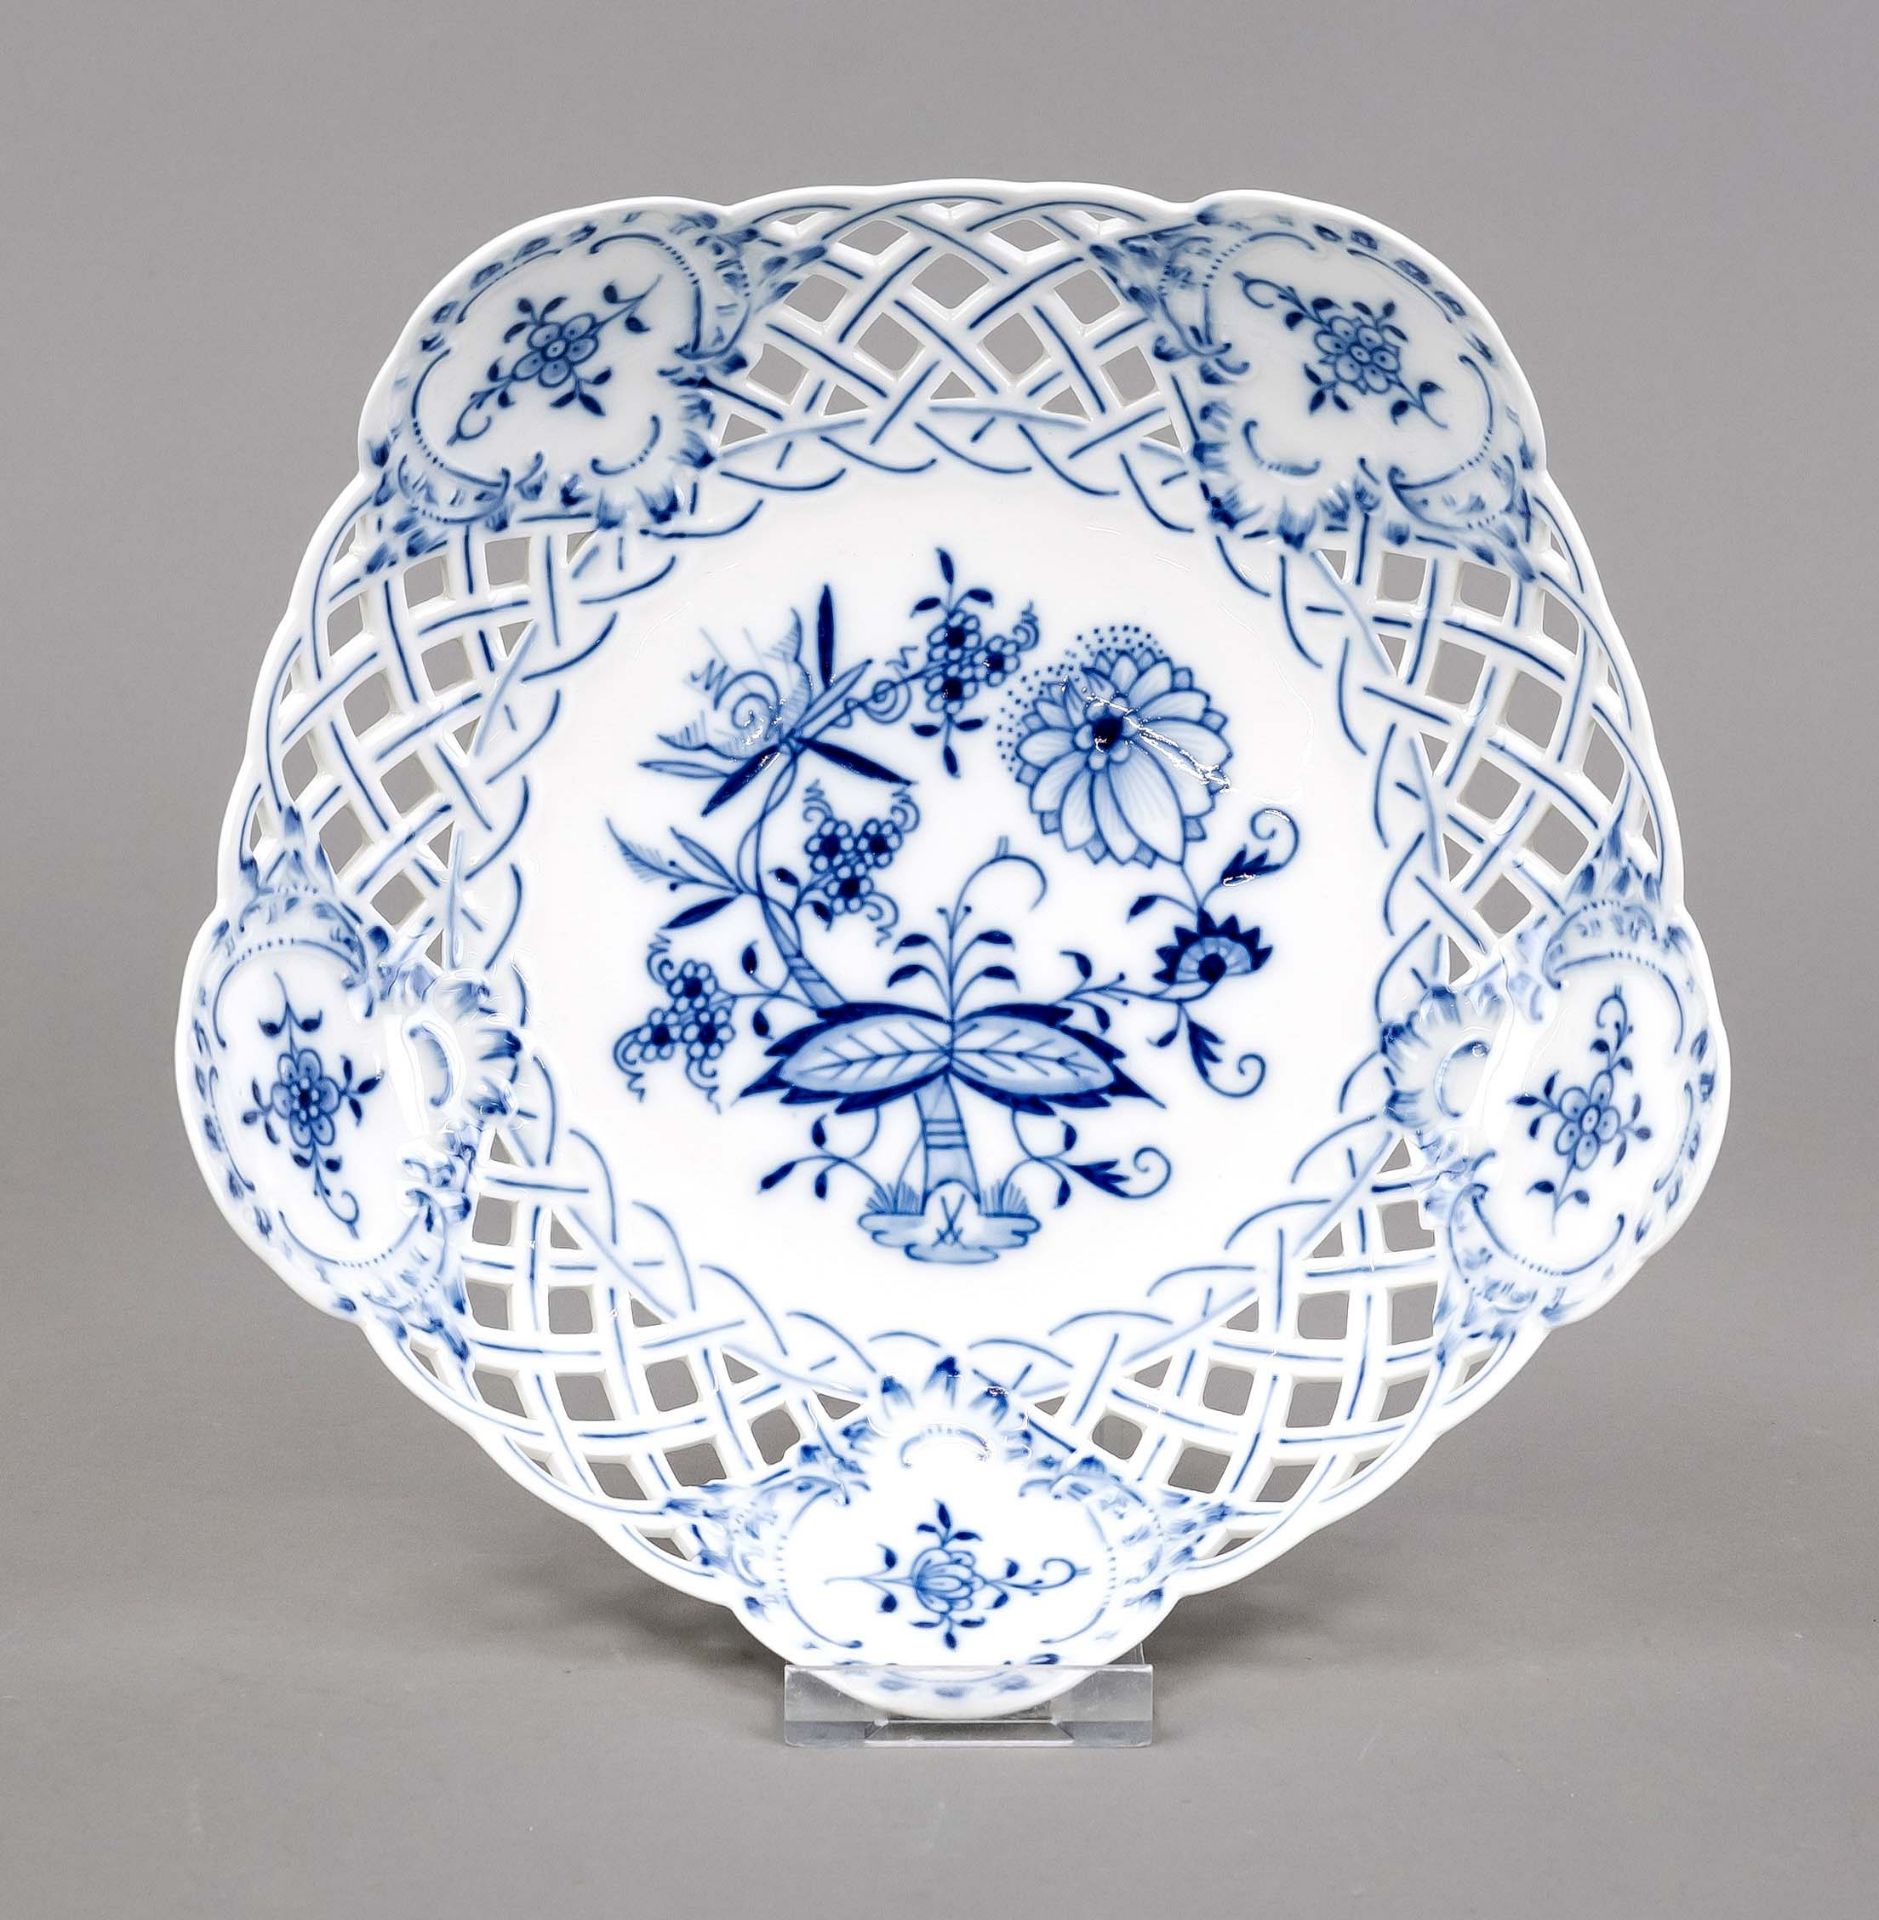 Openwork bowl, Meissen, mark after 1934, 1st choice, onion pattern decoration in underglaze blue,